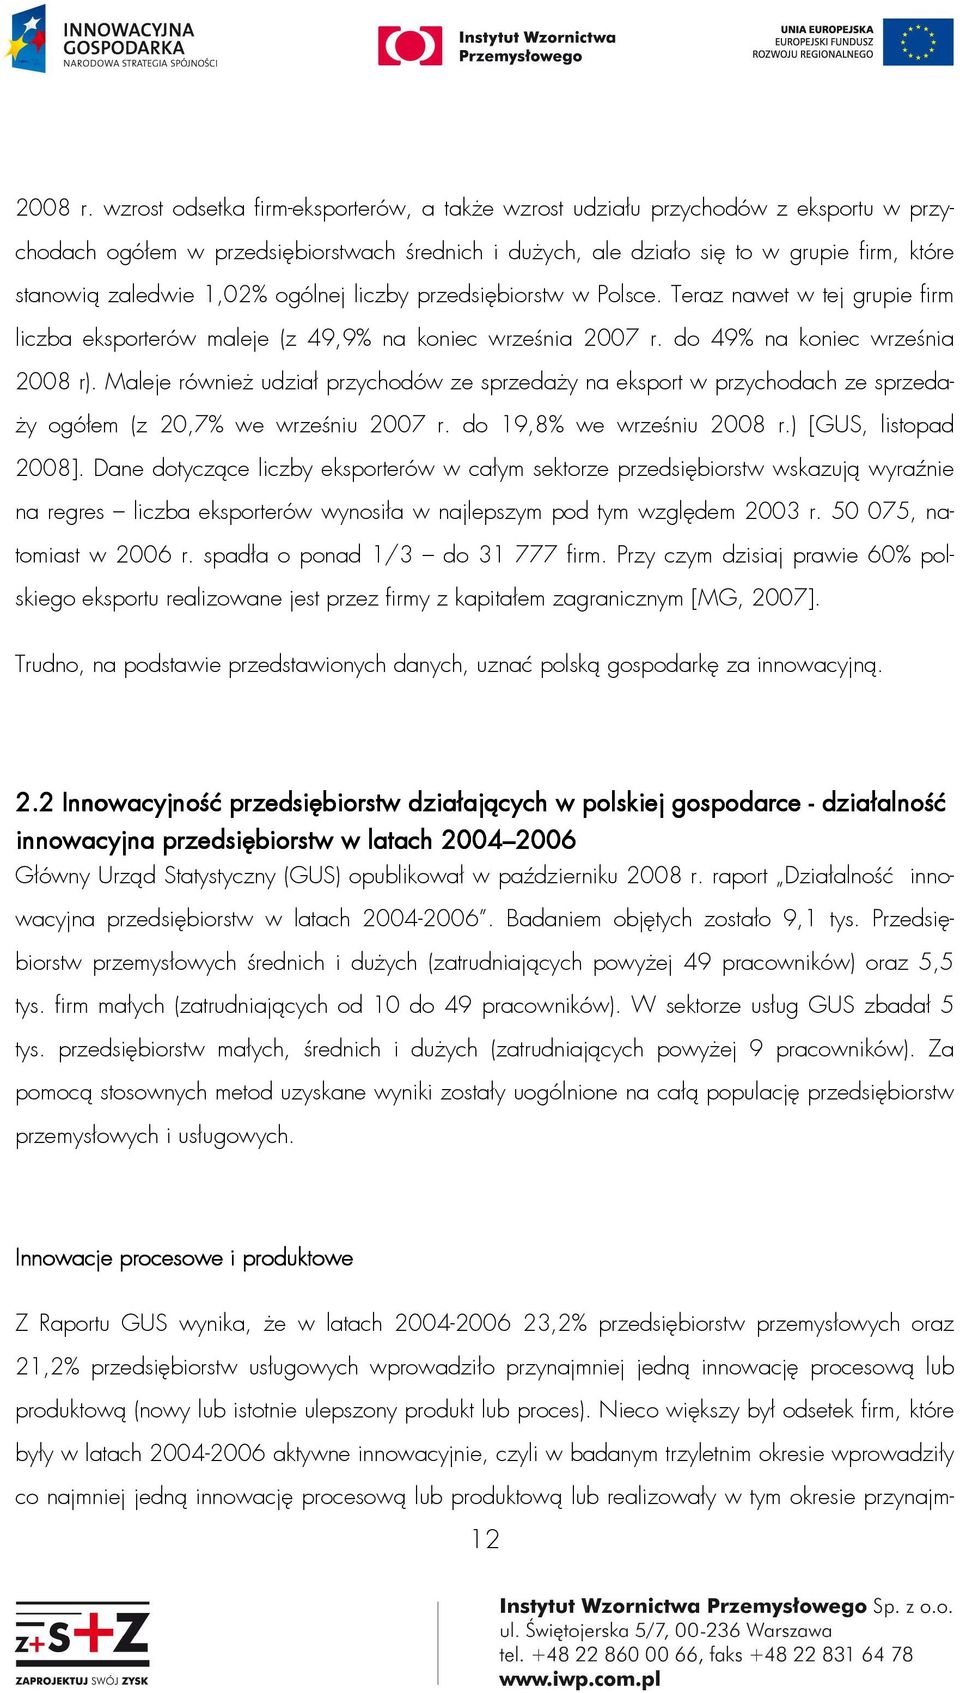 1,02% ogólnej liczby przedsiębiorstw w Polsce. Teraz nawet w tej grupie firm liczba eksporterów maleje (z 49,9% na koniec września 2007 r. do 49% na koniec września 2008 r).